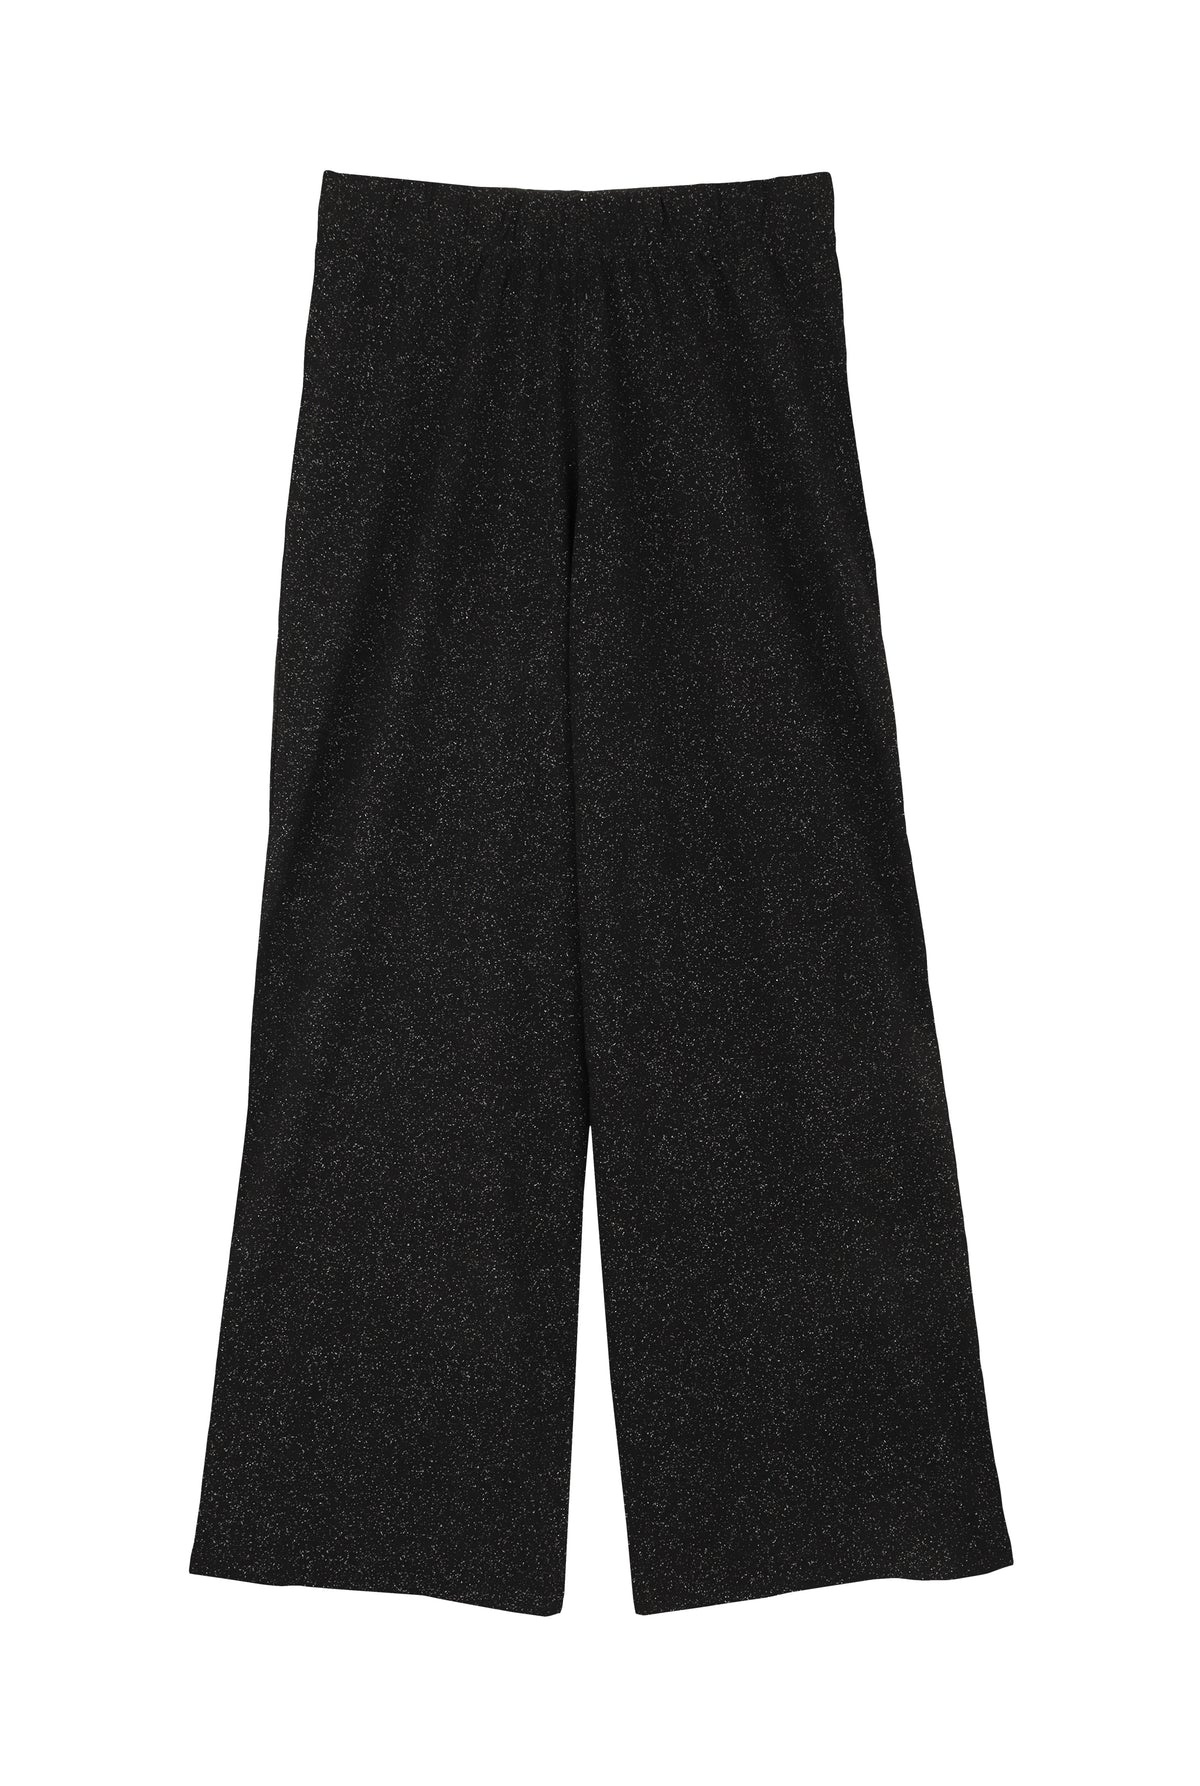 Pyjama long coton BIO - Paillettes Noir - Pantalons fluides - We Are Jolies